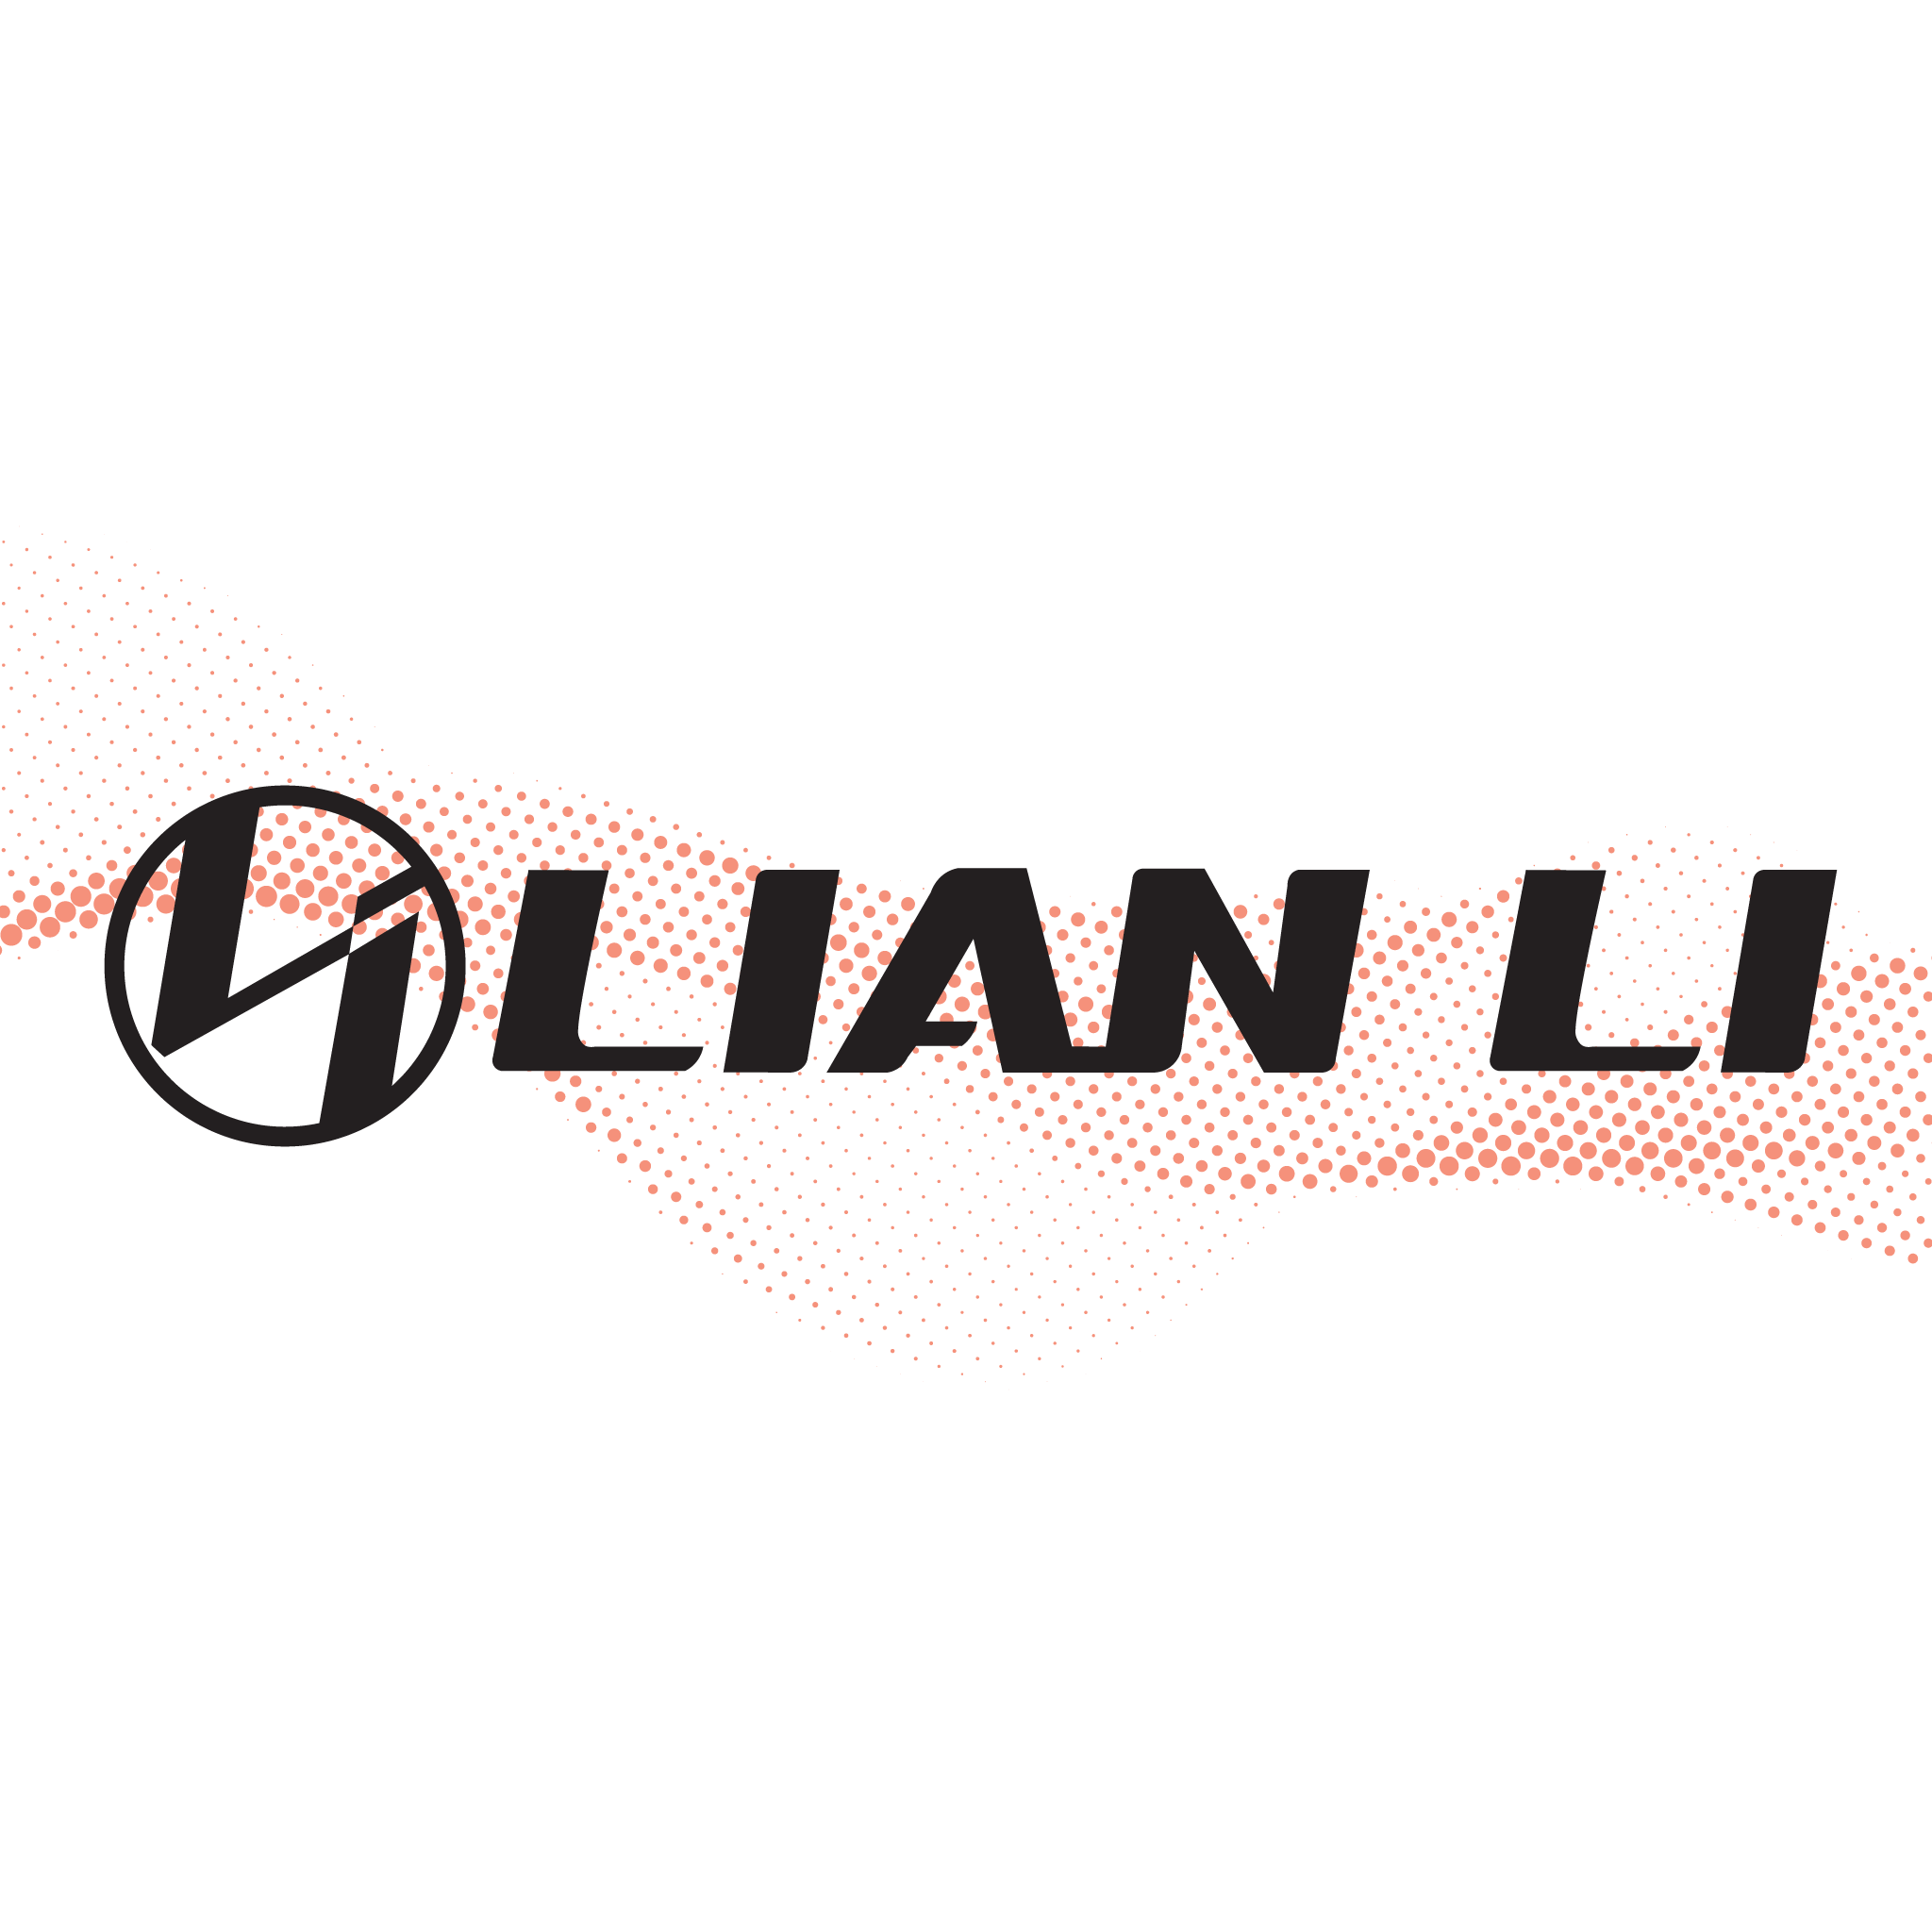 Lian_li